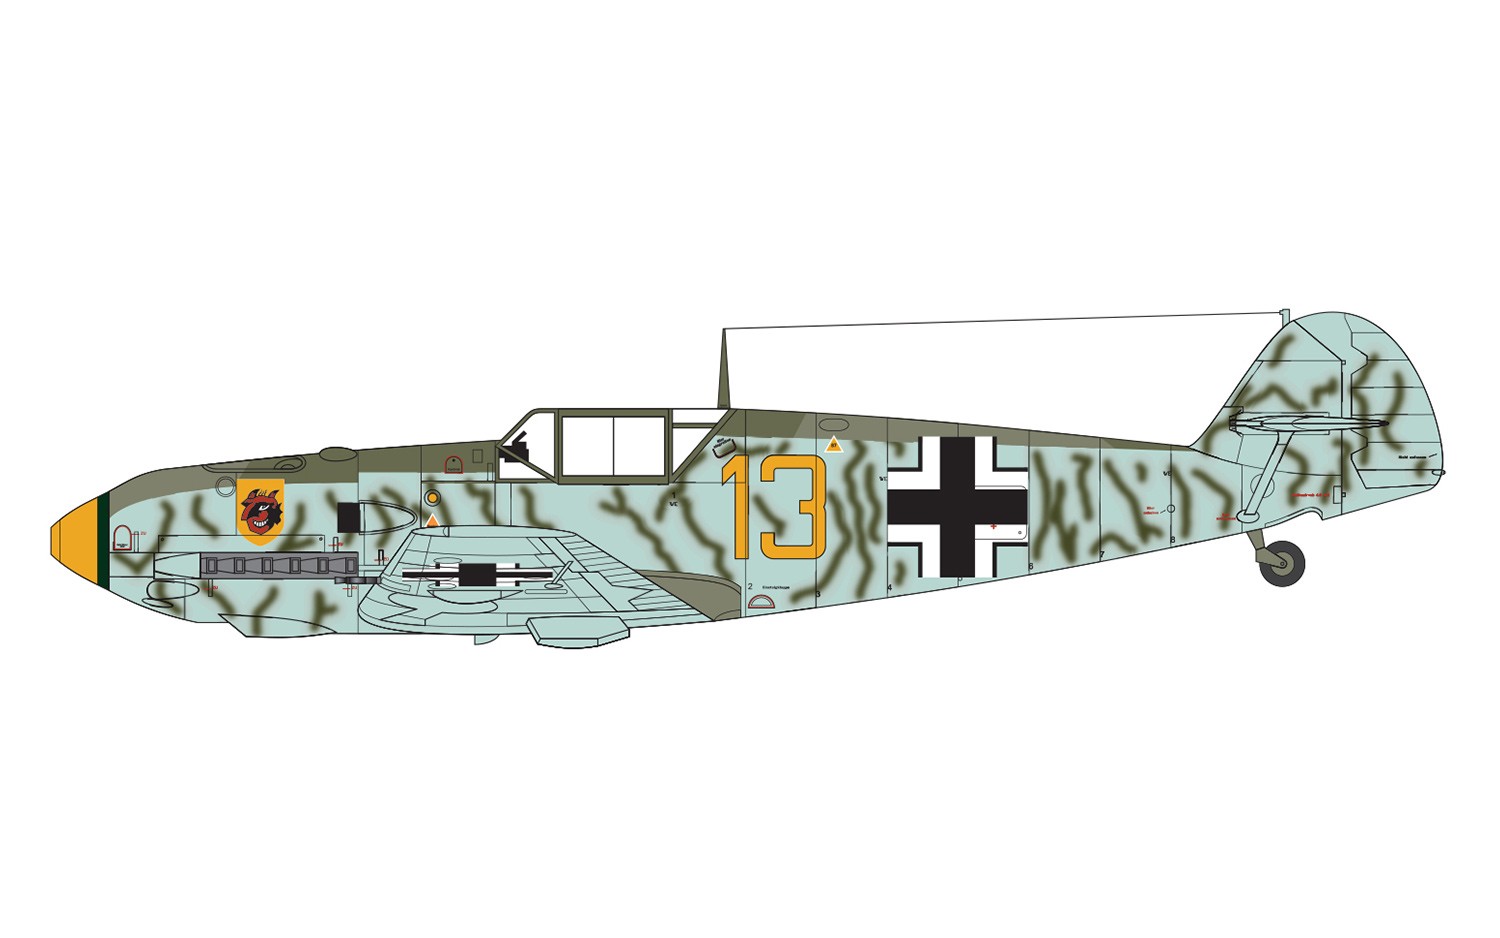 Avión 1/72 -Messerschmitt Bf-109E-4- Airfix